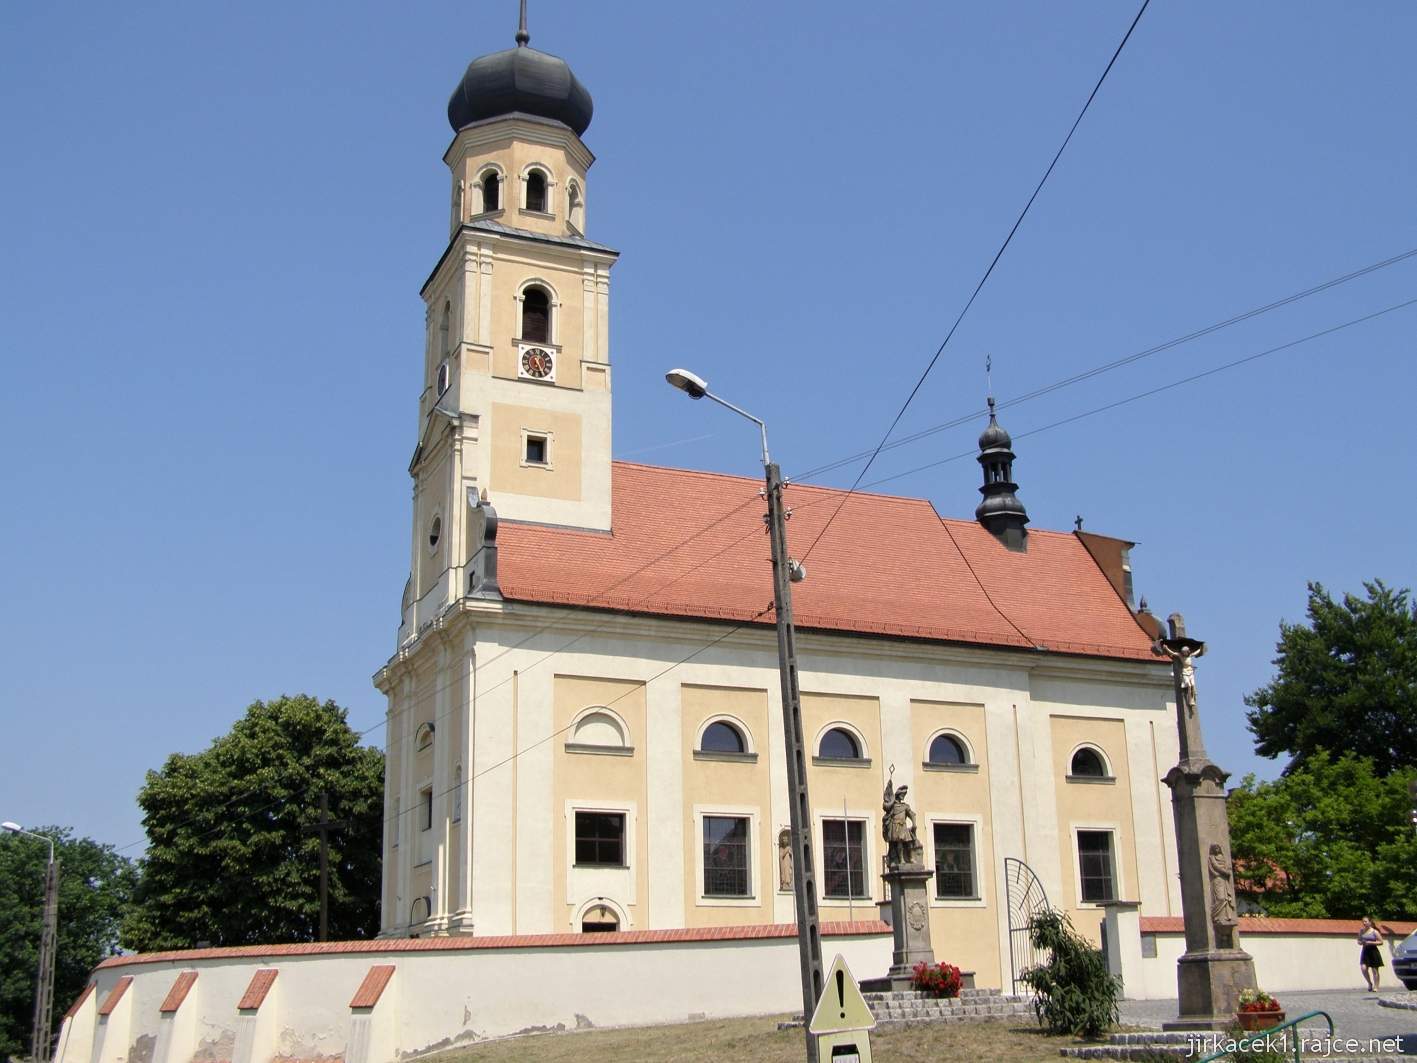 Tworków - kostel sv. Petra a Pavla (Kościół Św. Piotra i Pawła w Tworkowie) - celkový pohled